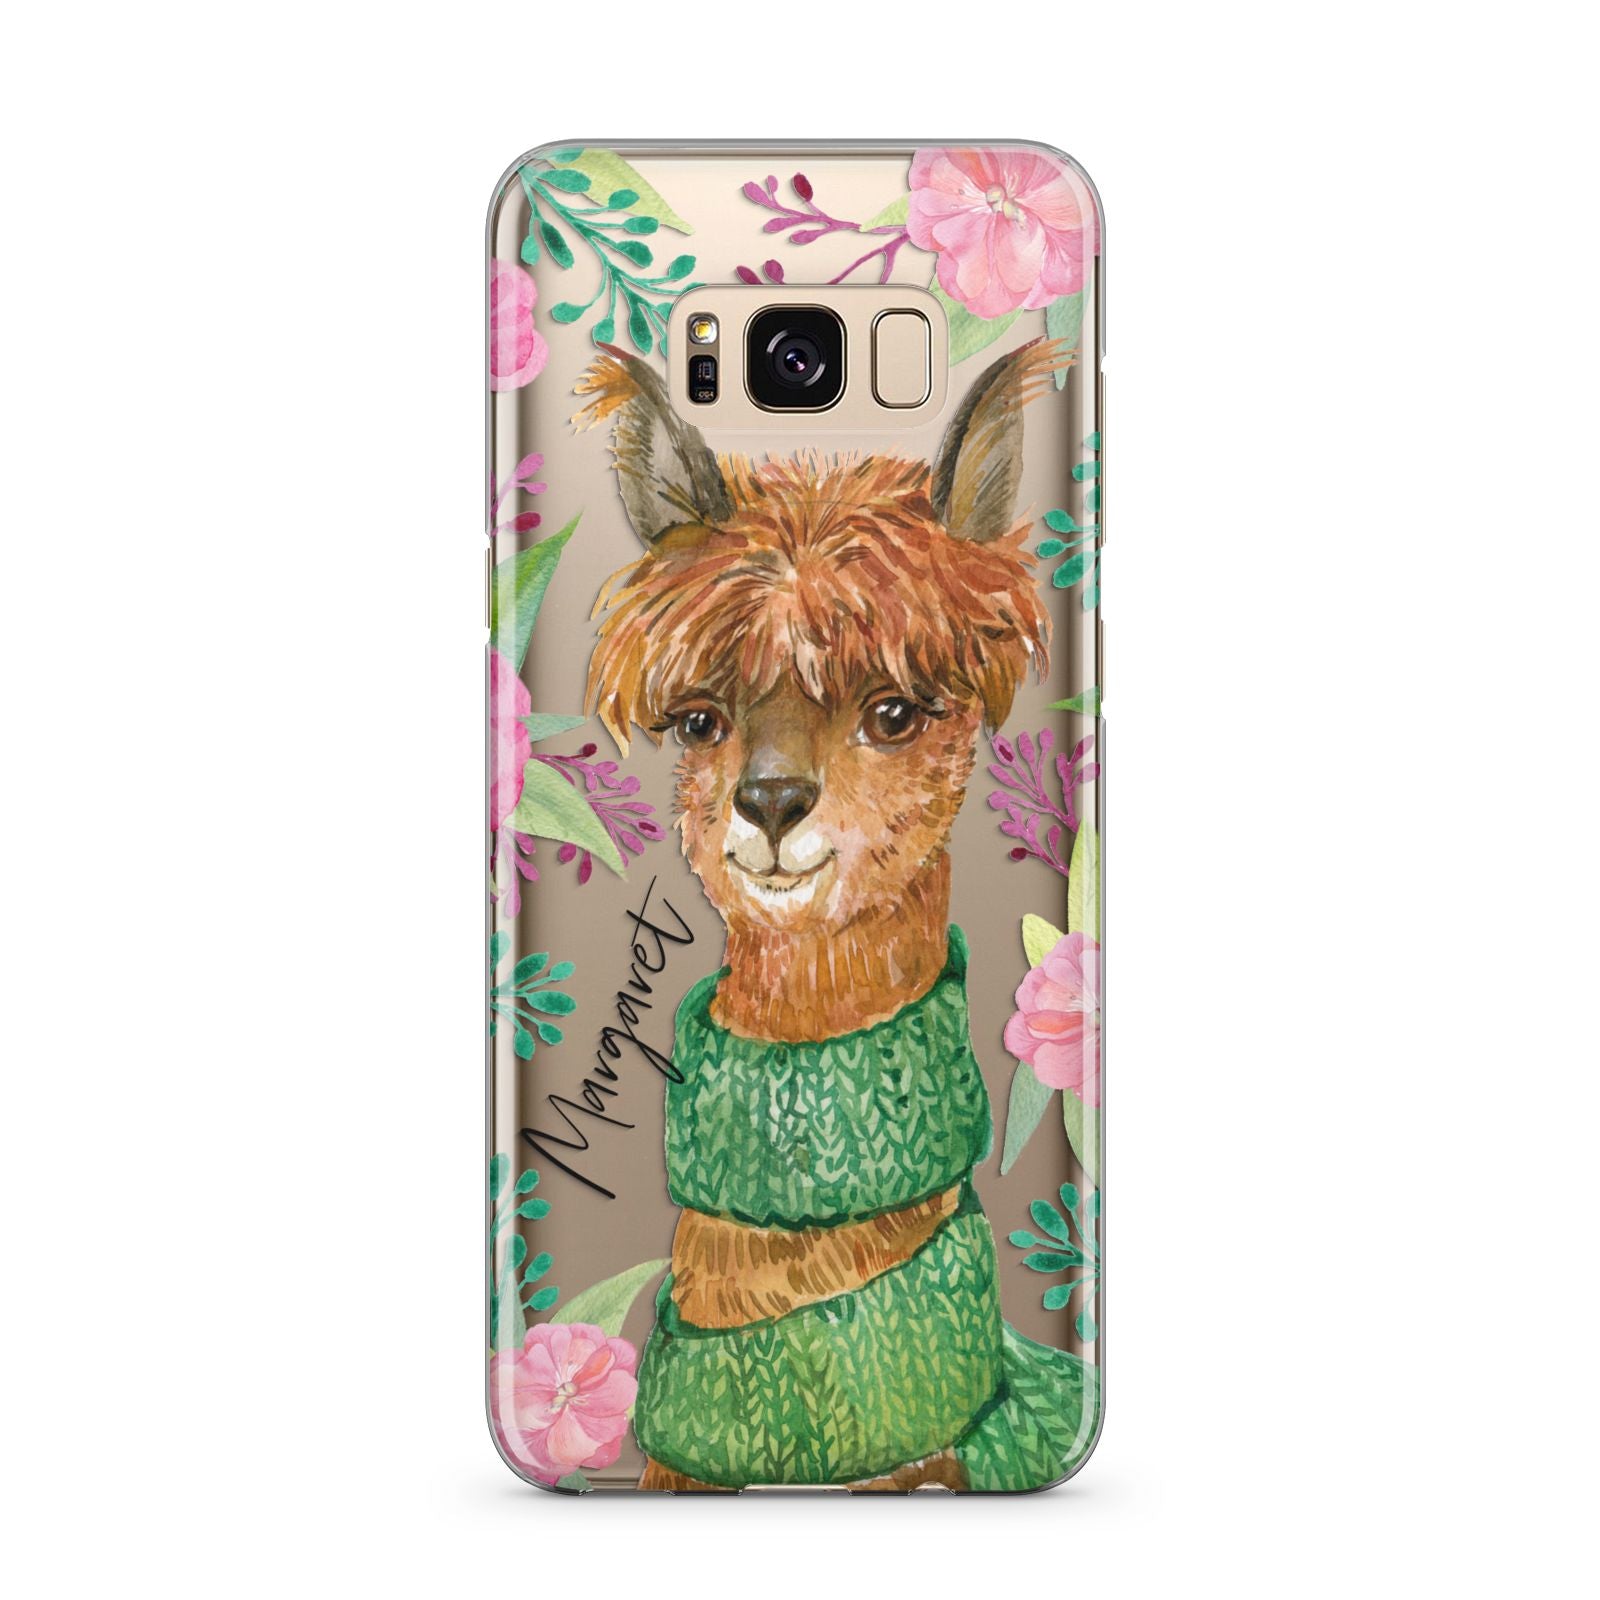 Personalised Alpaca Samsung Galaxy S8 Plus Case